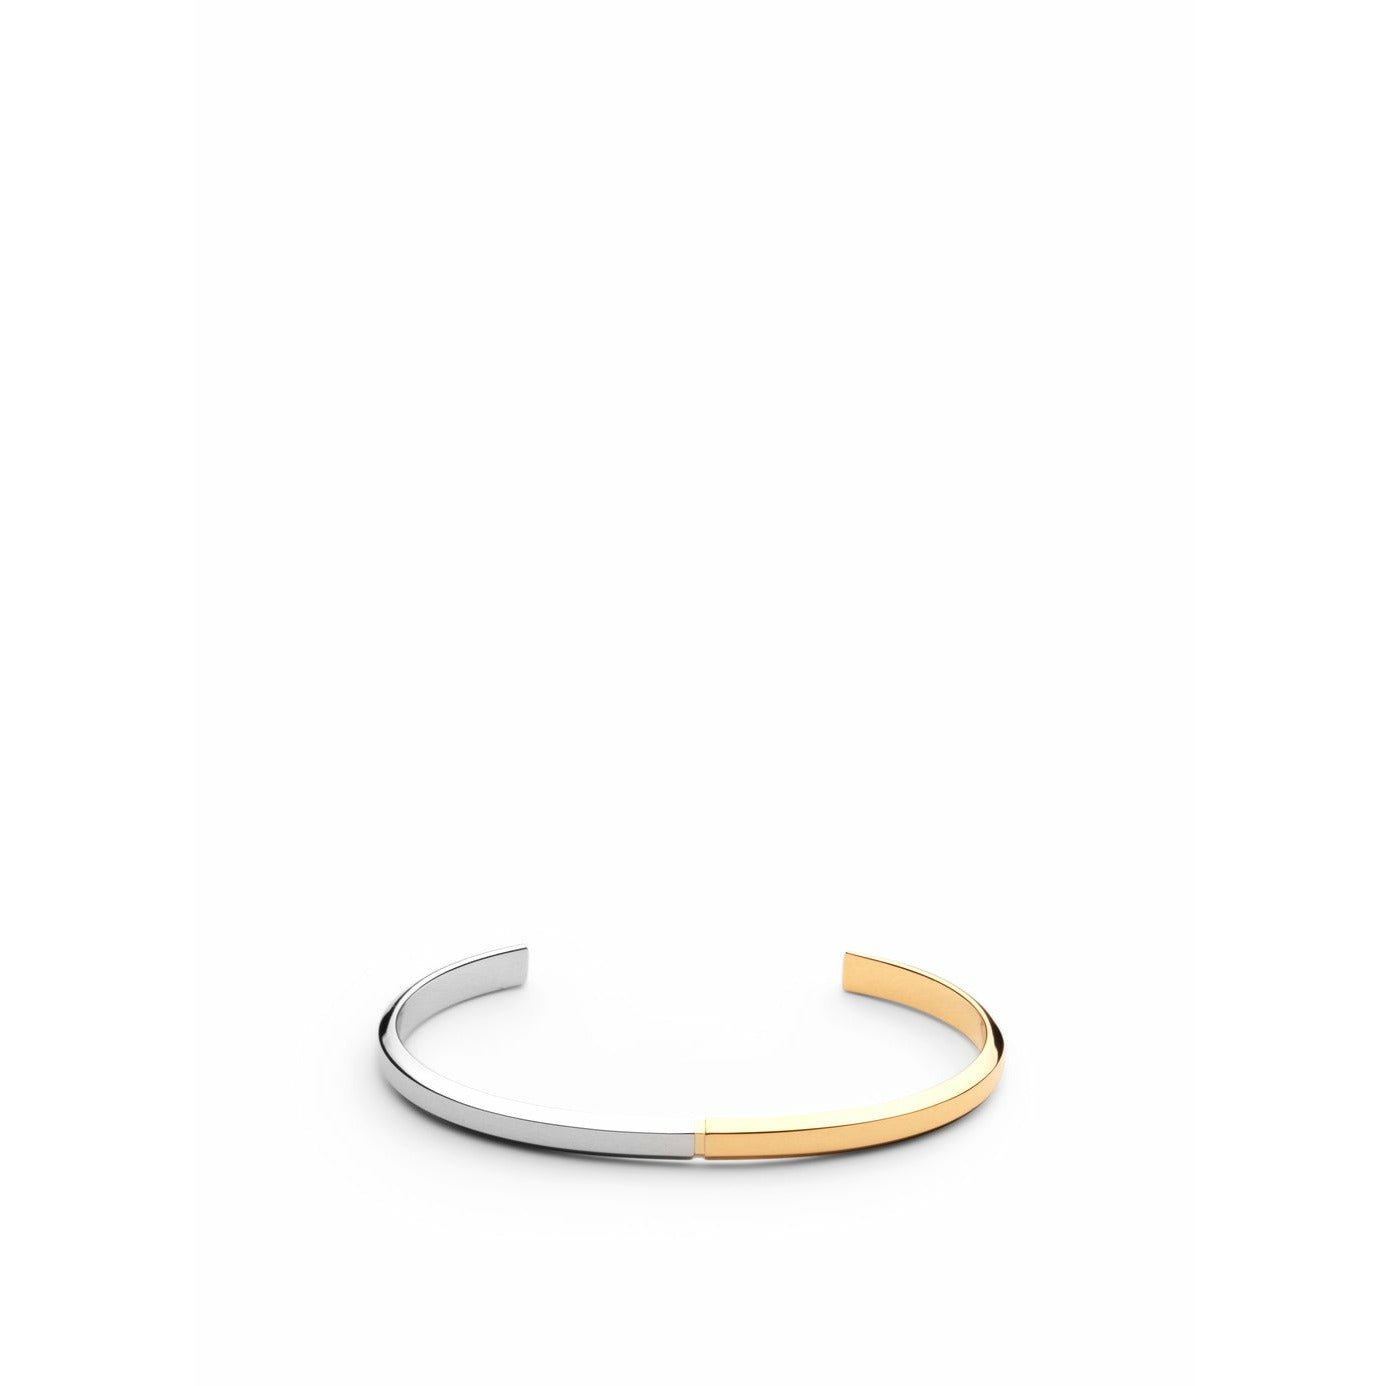 Skultuna Icon dunne armband klein gepolijst staal/goud vergulde, Ø14,5 cm